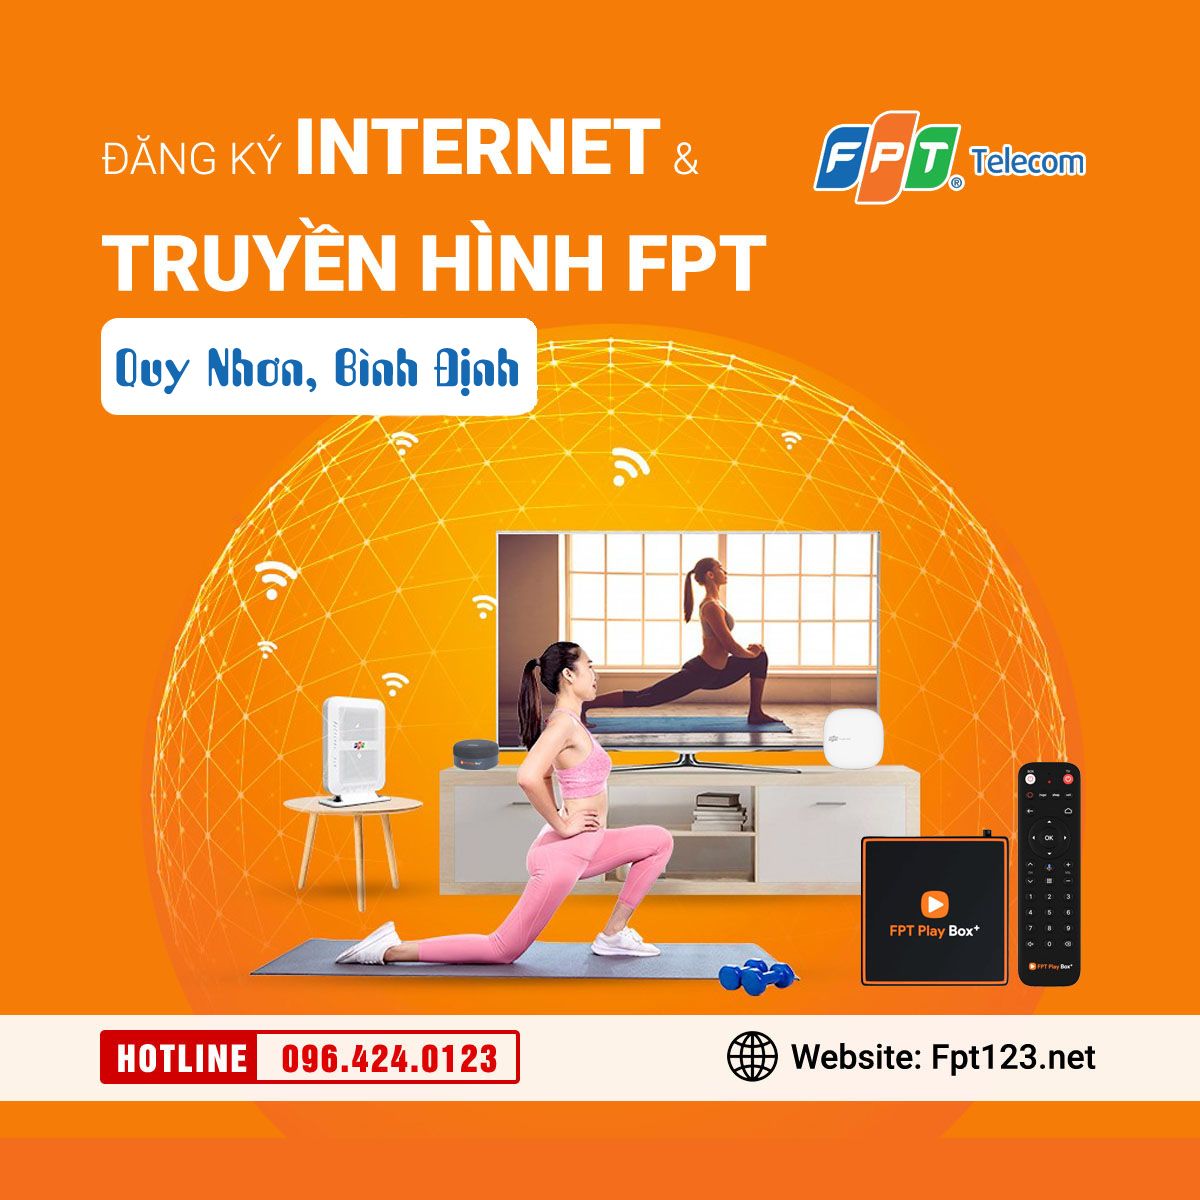 Đăng ký internet và truyền hình FPT Quy Nhơn, Bình Định